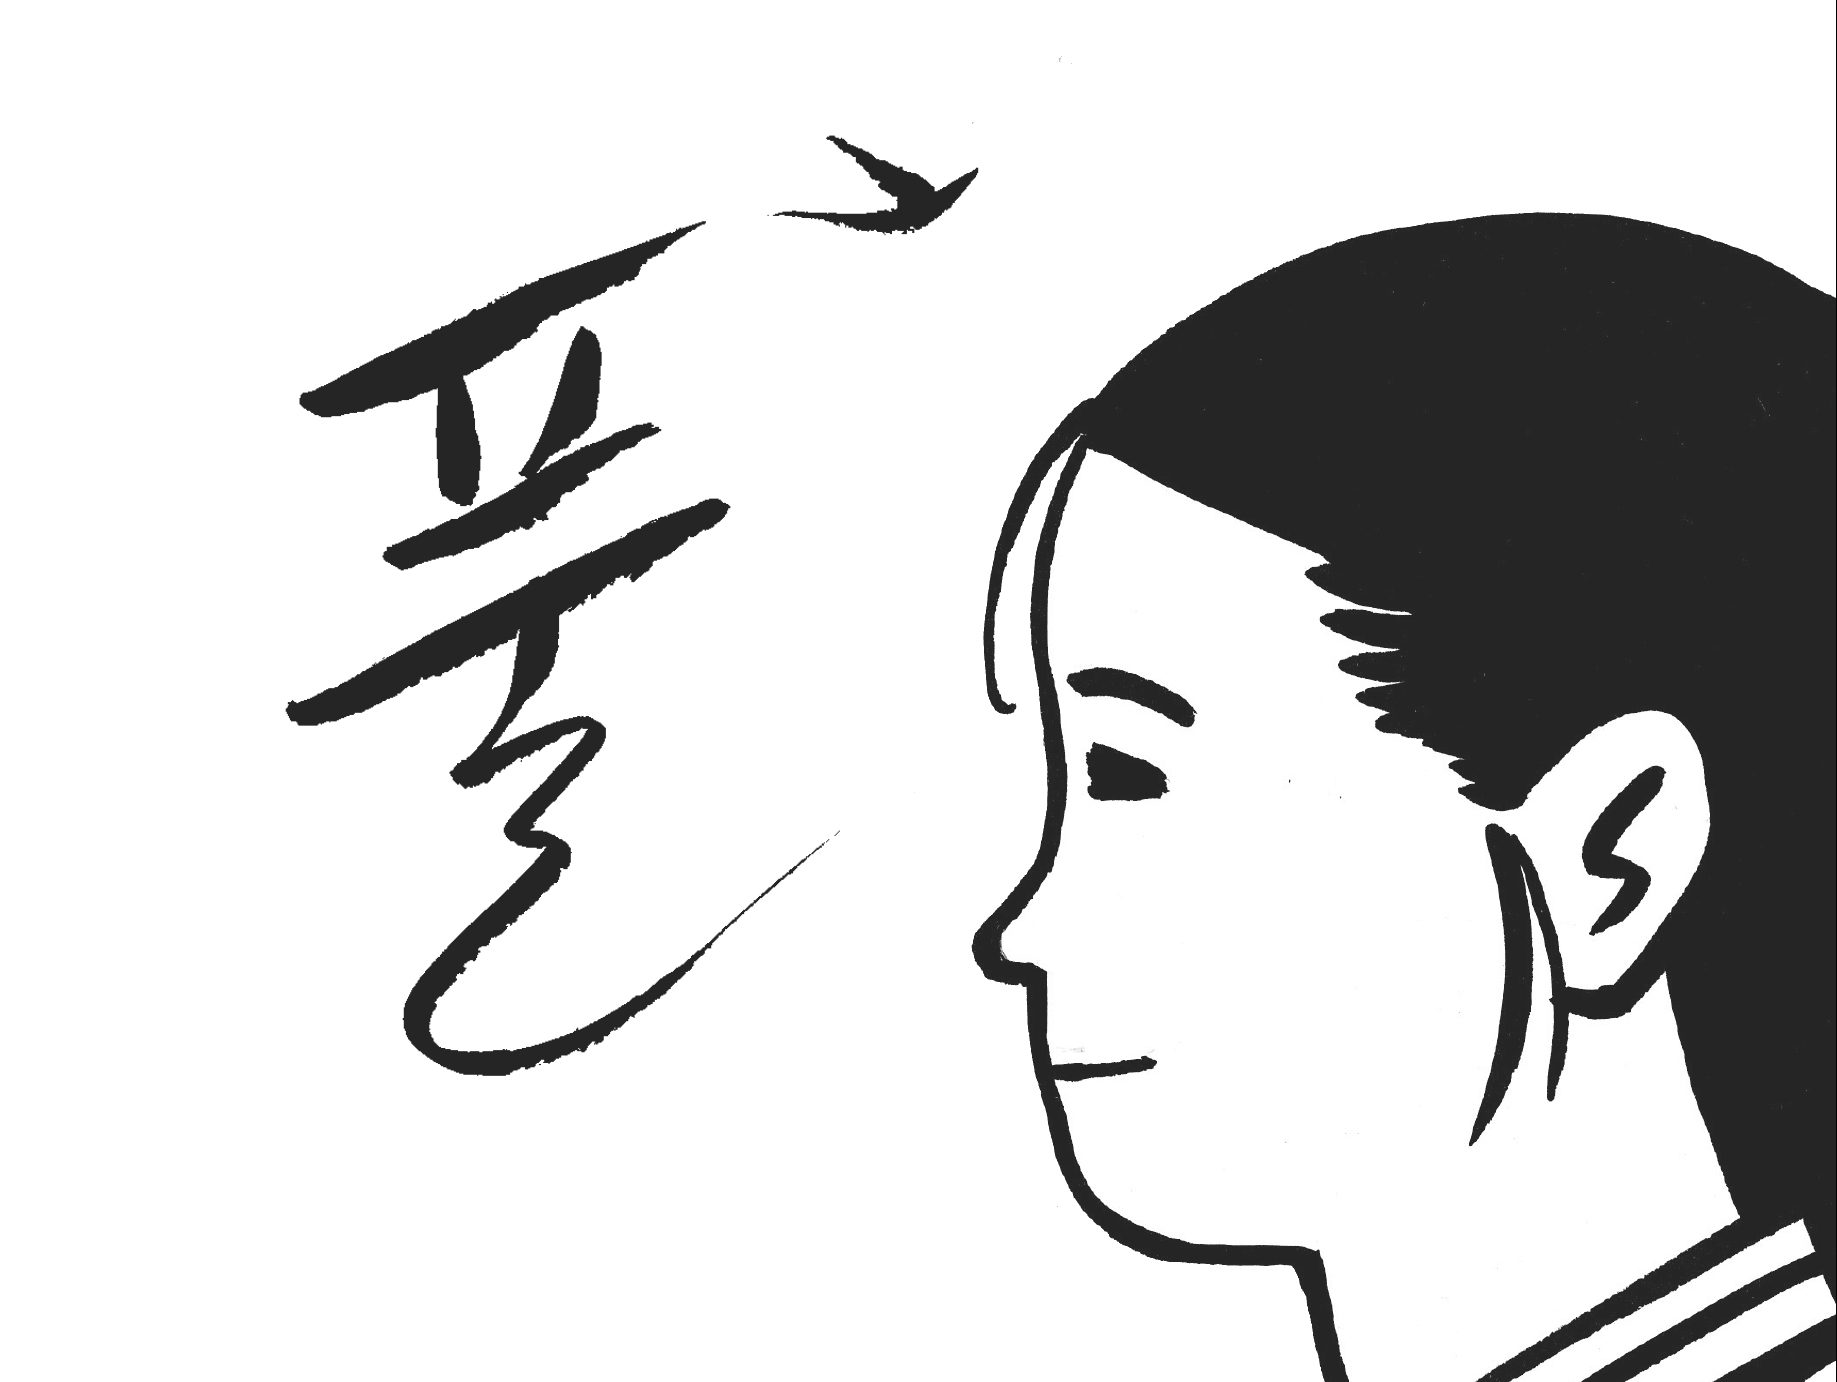 Le Malerbe, la storia delle comfort women in una graphic novel thumbnail